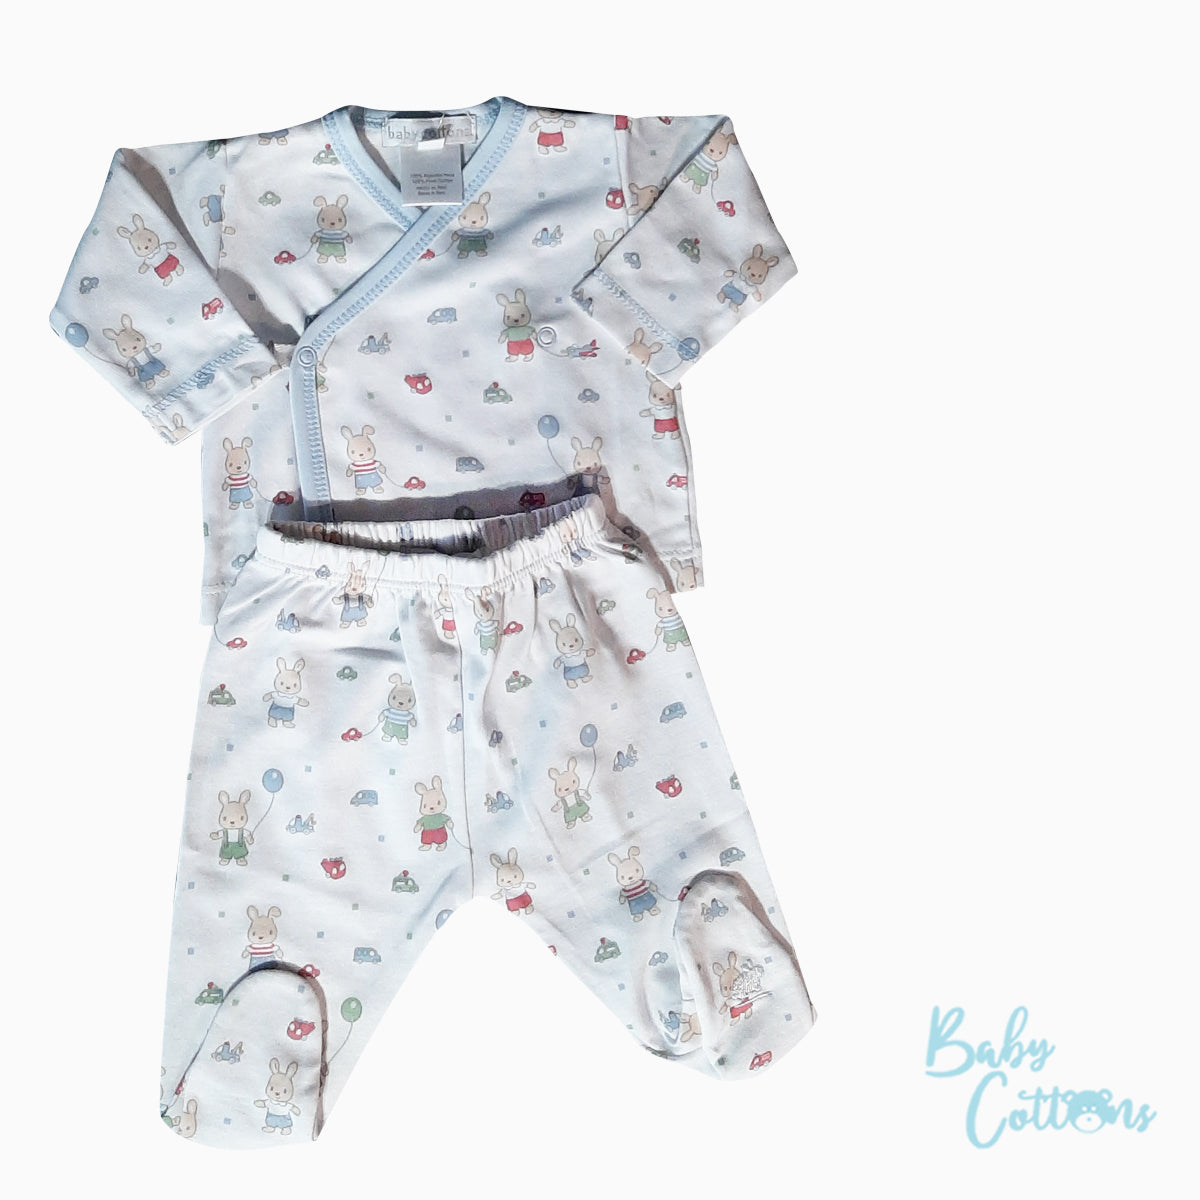 Pijama Babycottons Set Bunnies Batita ML Ranita C/Pie Blanco Celeste